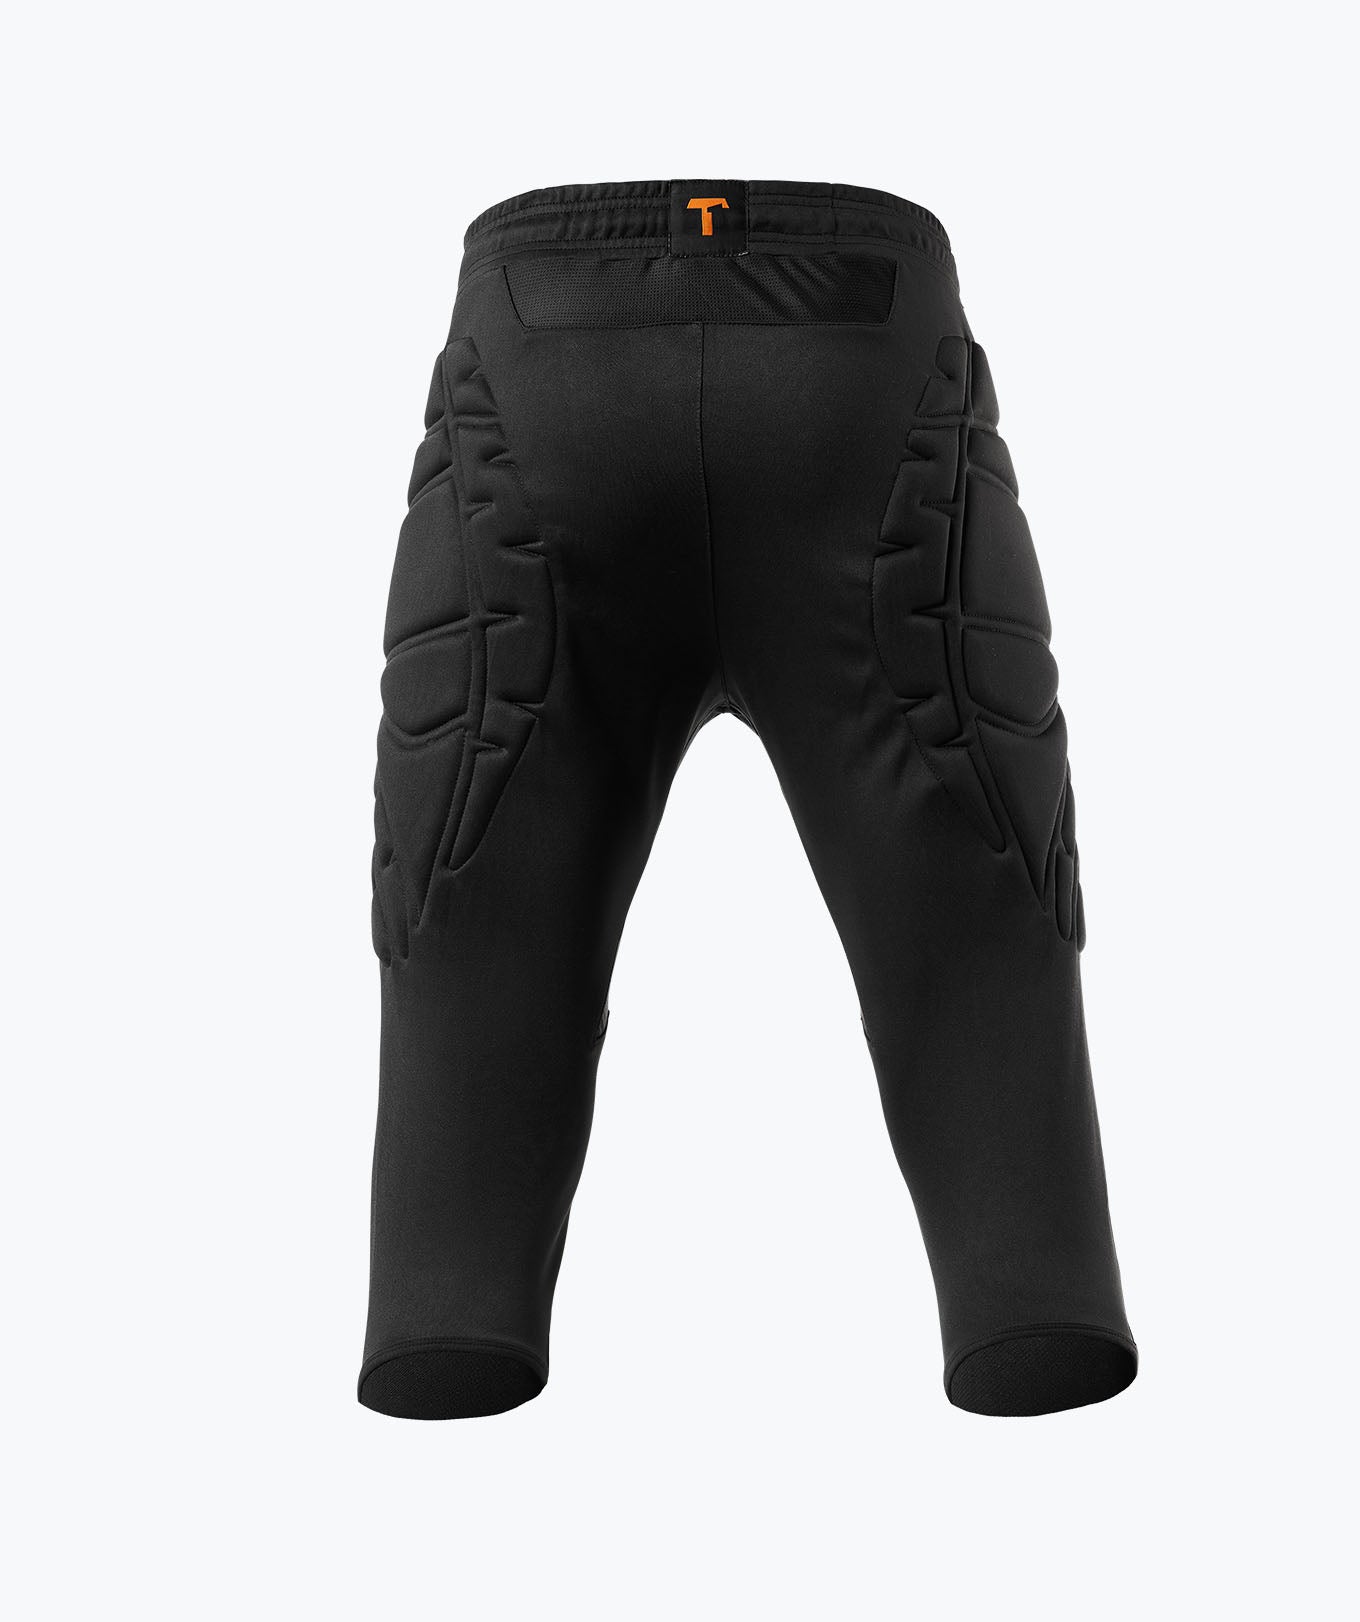 adidas Tierro 13 3/4 Pants - Black Goalkeeper Pants